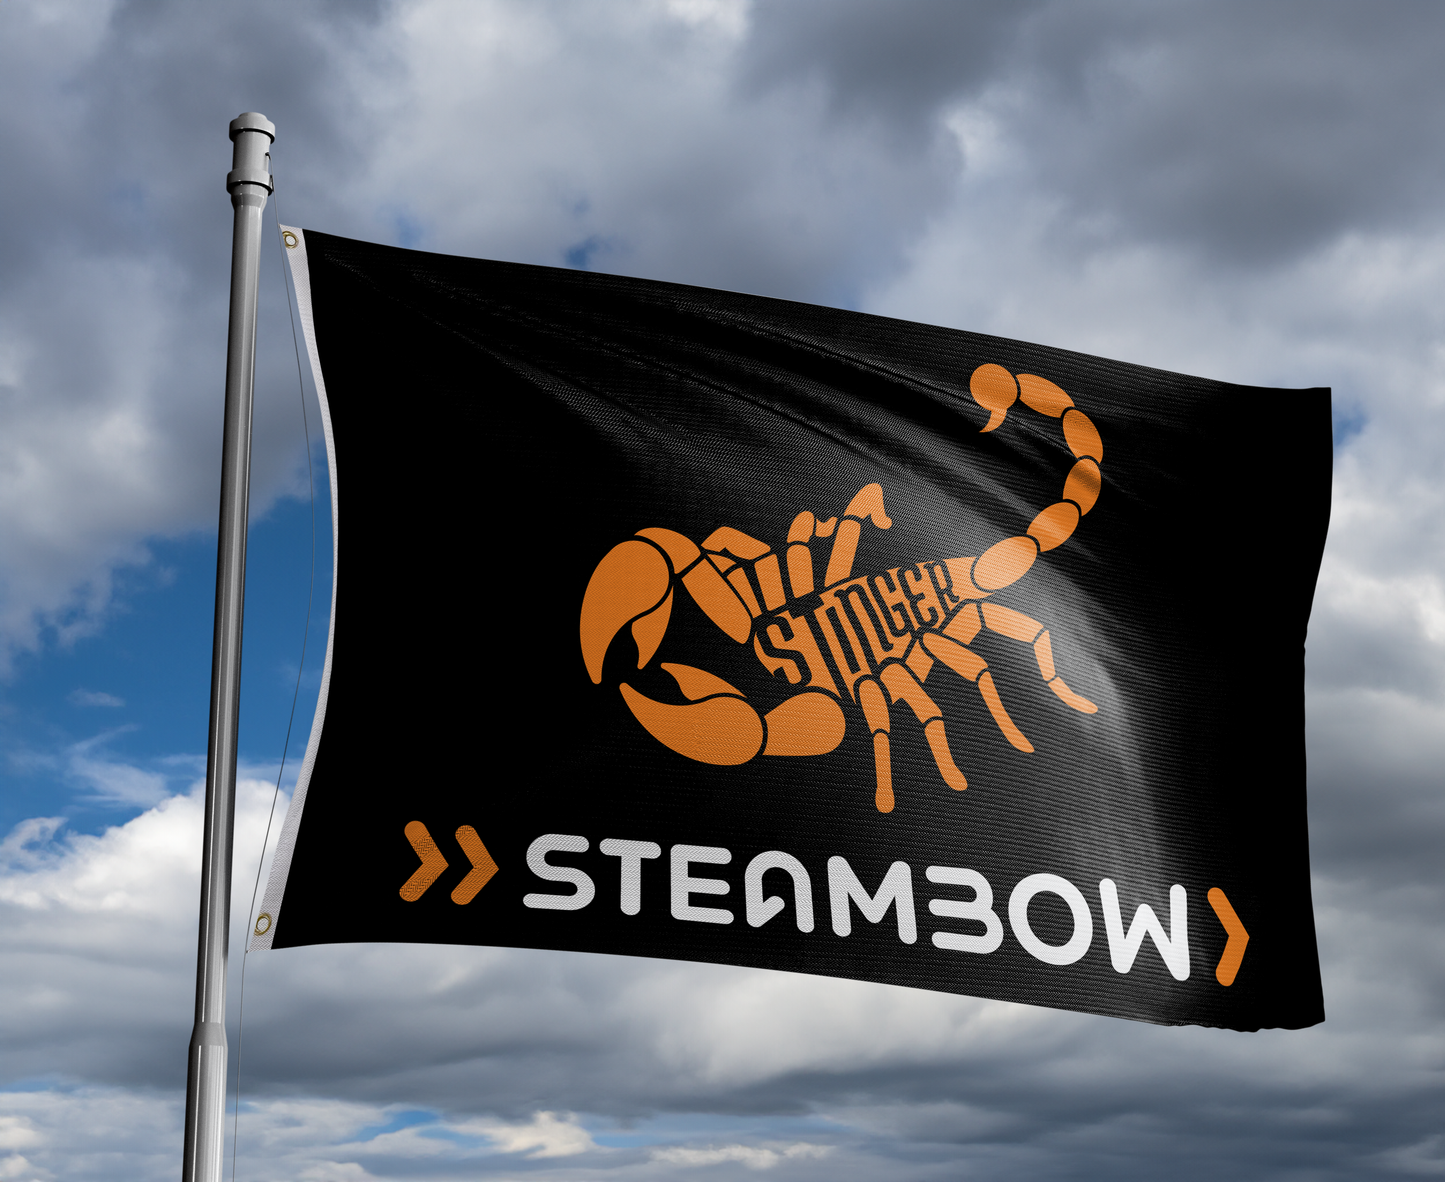 Steambow Stinger 3'x5' Flag